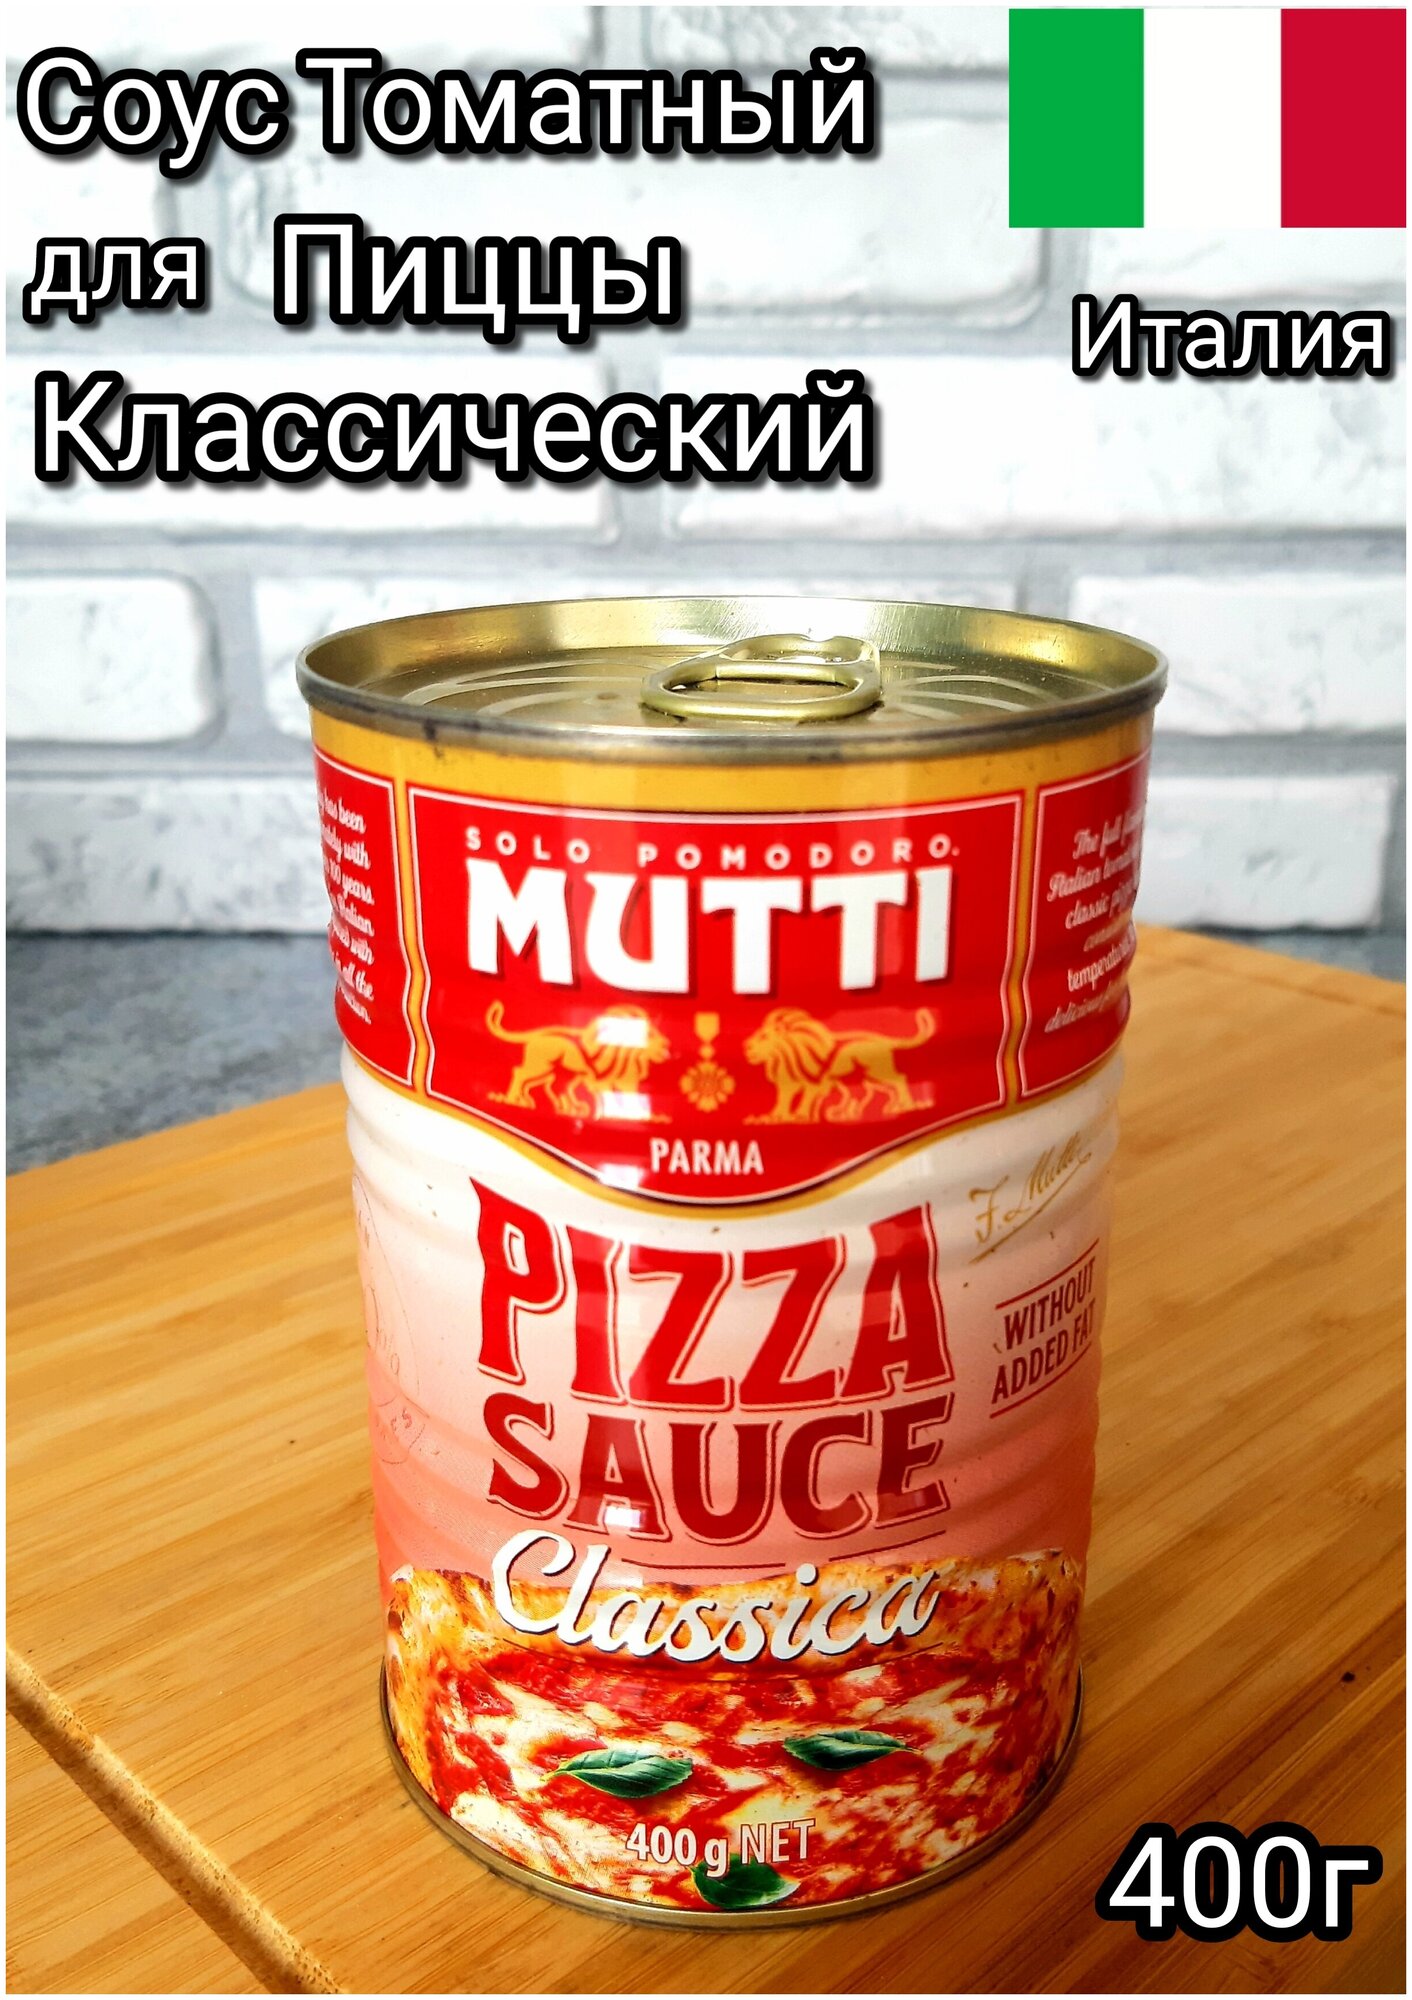 томатный соус для пиццы mutti состав фото 10